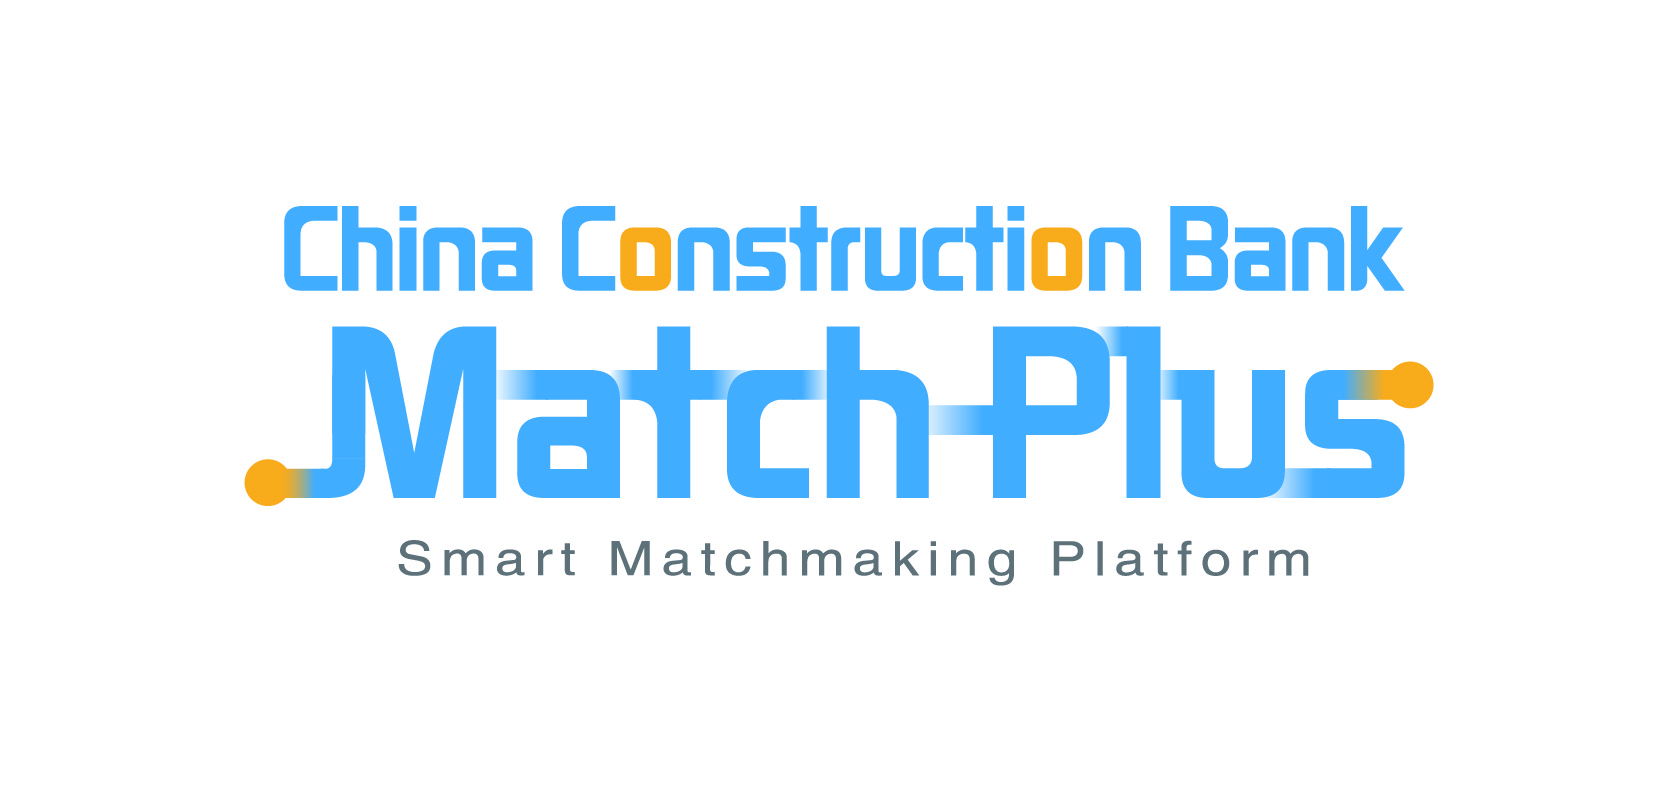 Smart Matchmaking Platform